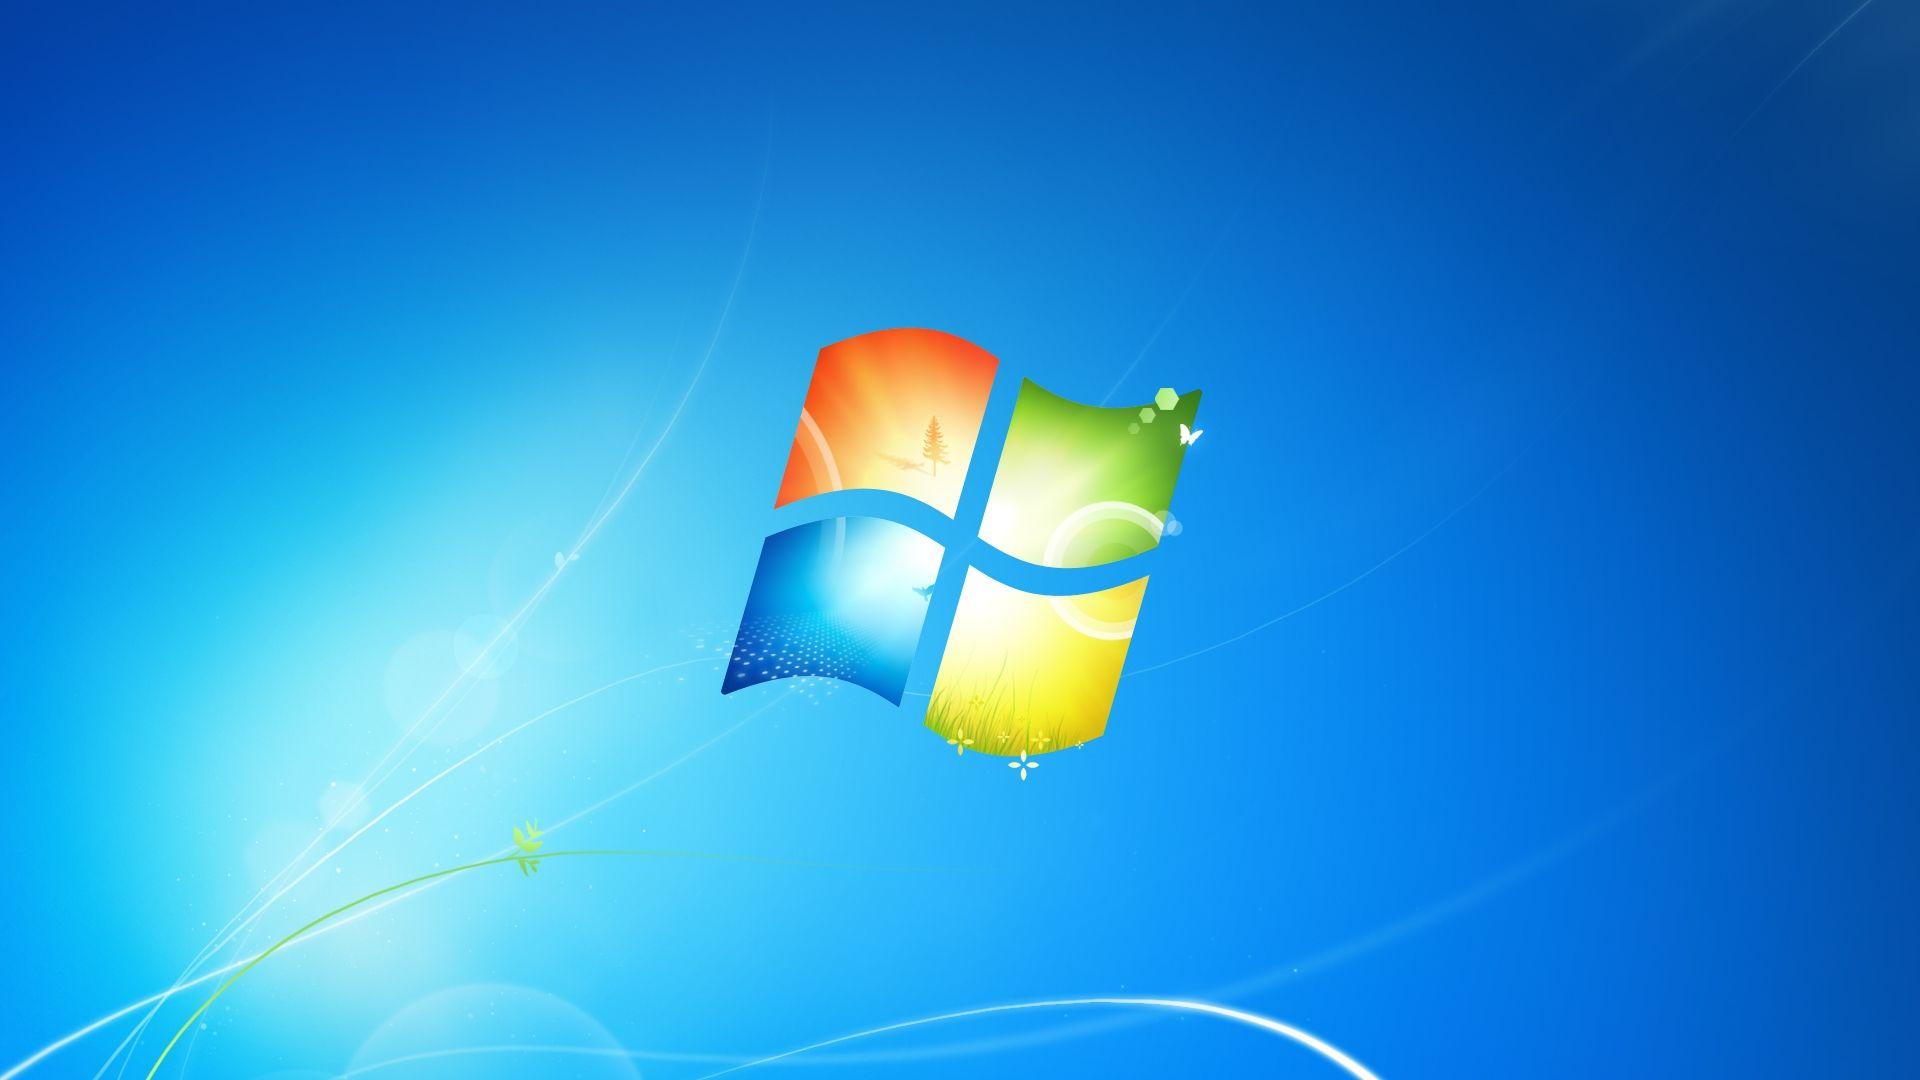 Windows desktop background